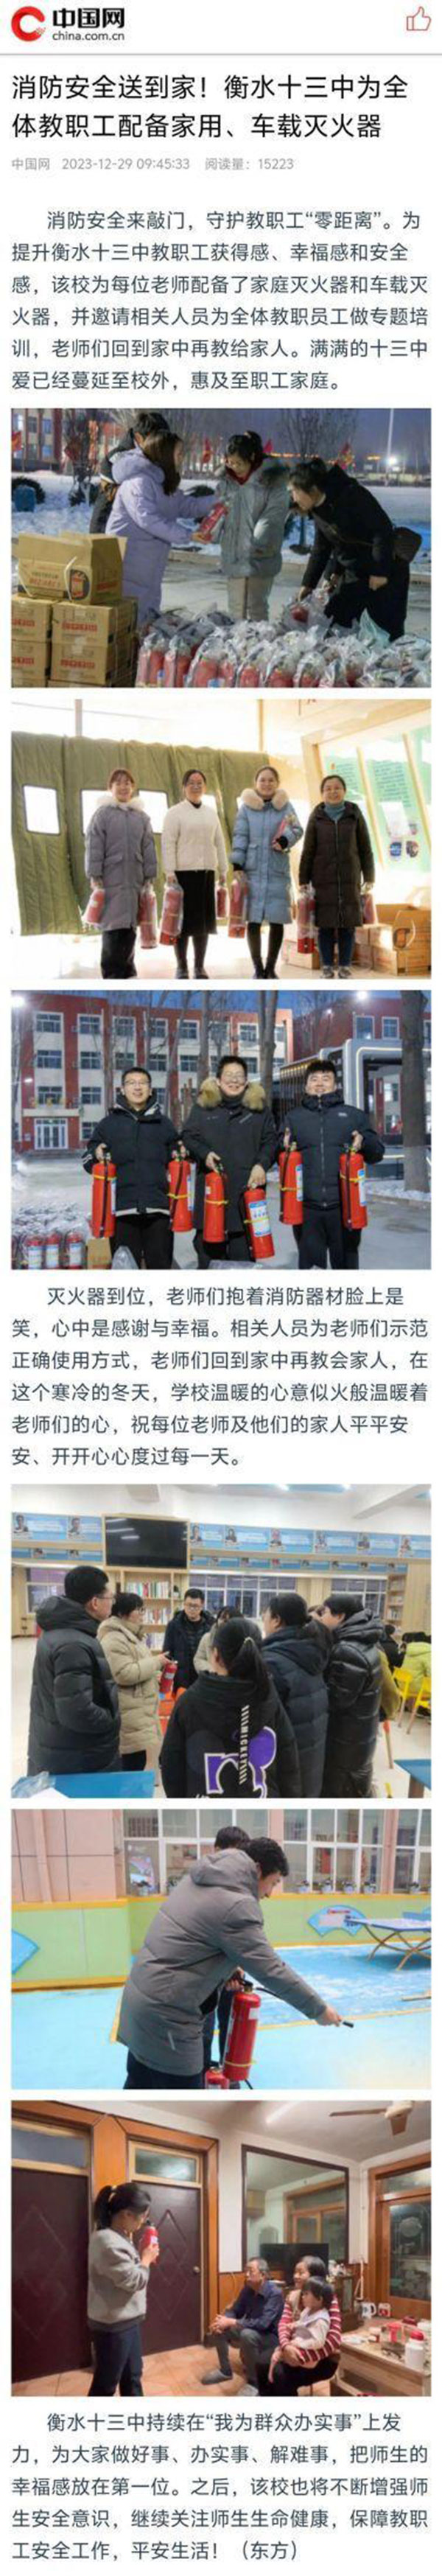 学习强国、中国网、河北新闻网、长城冀云客户端报道我校为老师配备灭火器